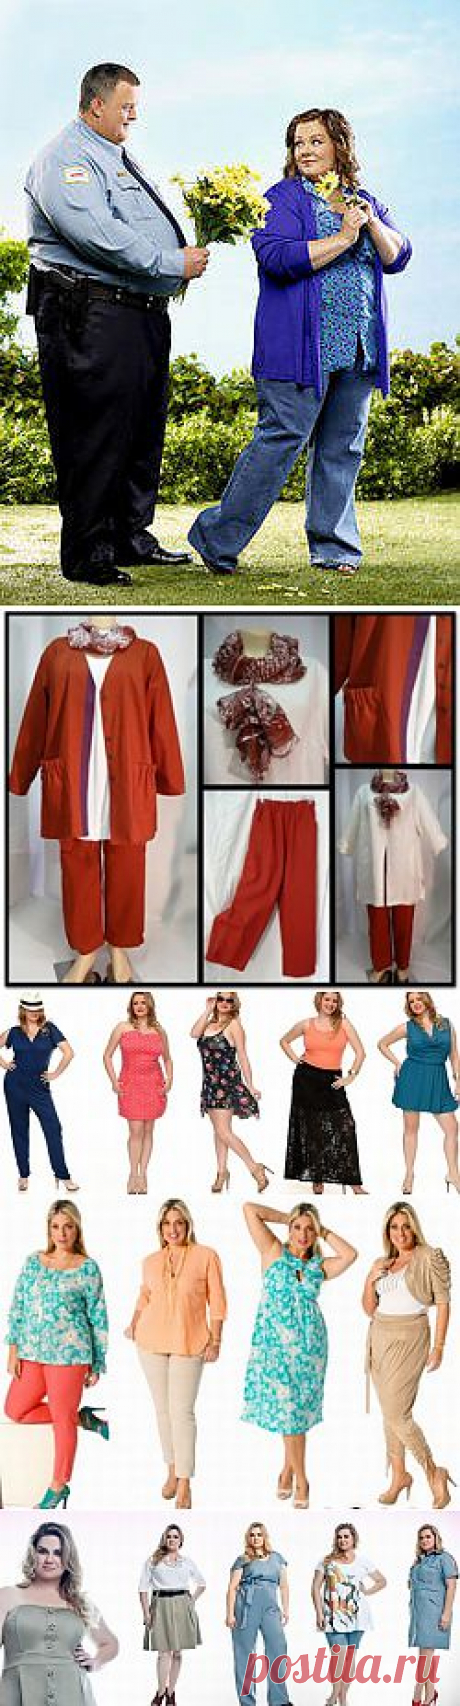 Летняя коллекция женской одежды больших размеров. Часть 1